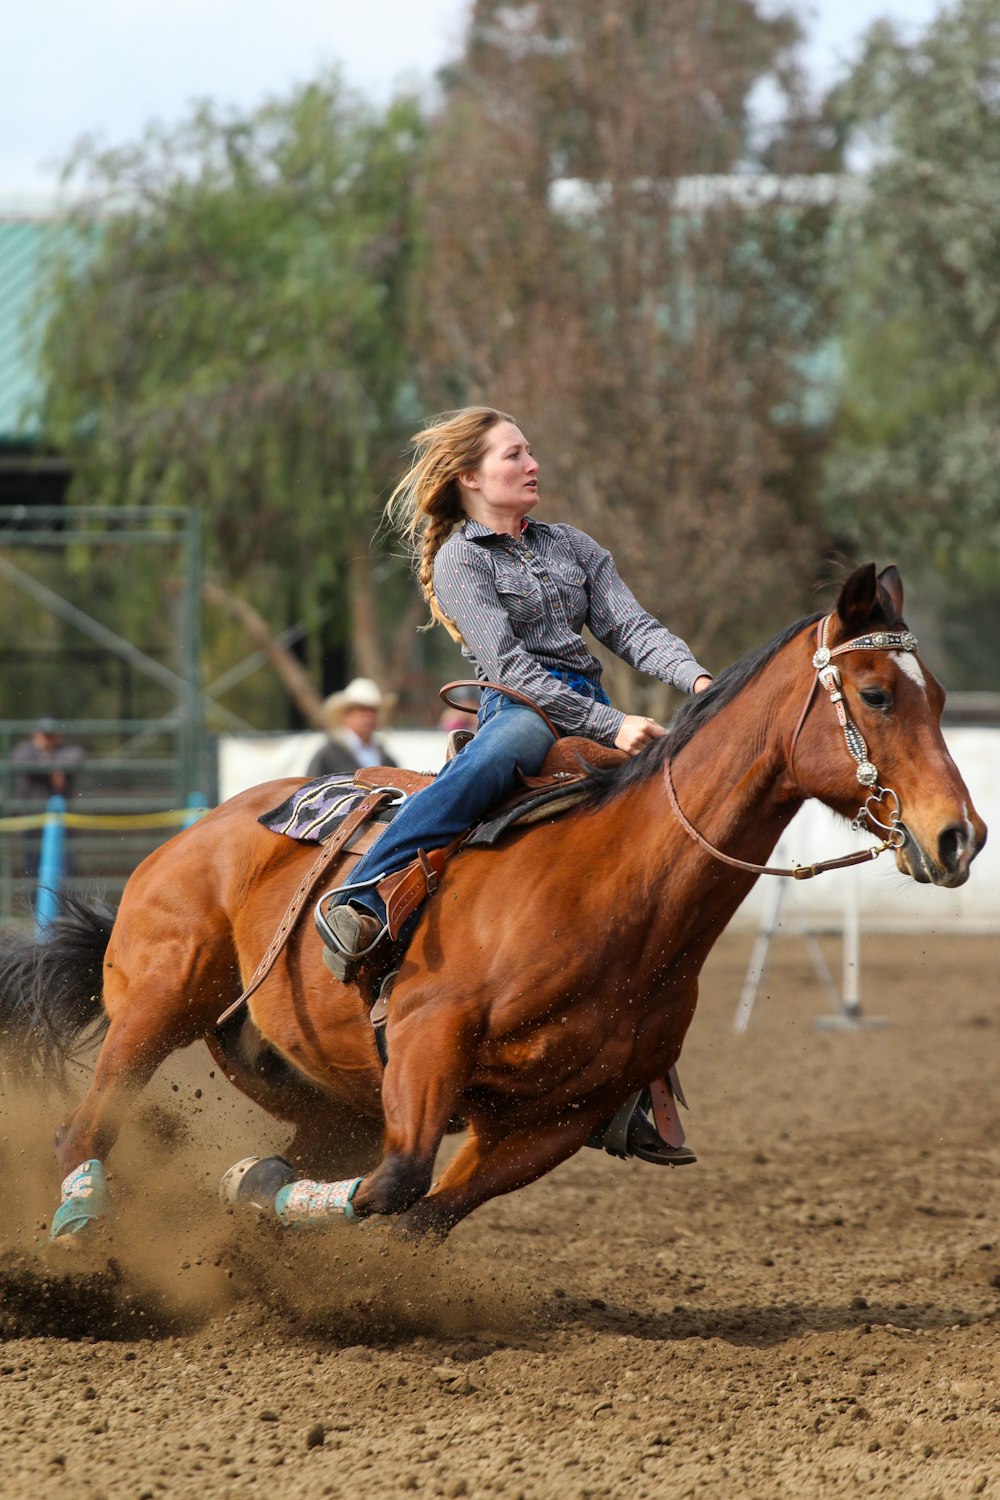 Chica con chaqueta de mezclilla azul montando caballo marrón durante el día